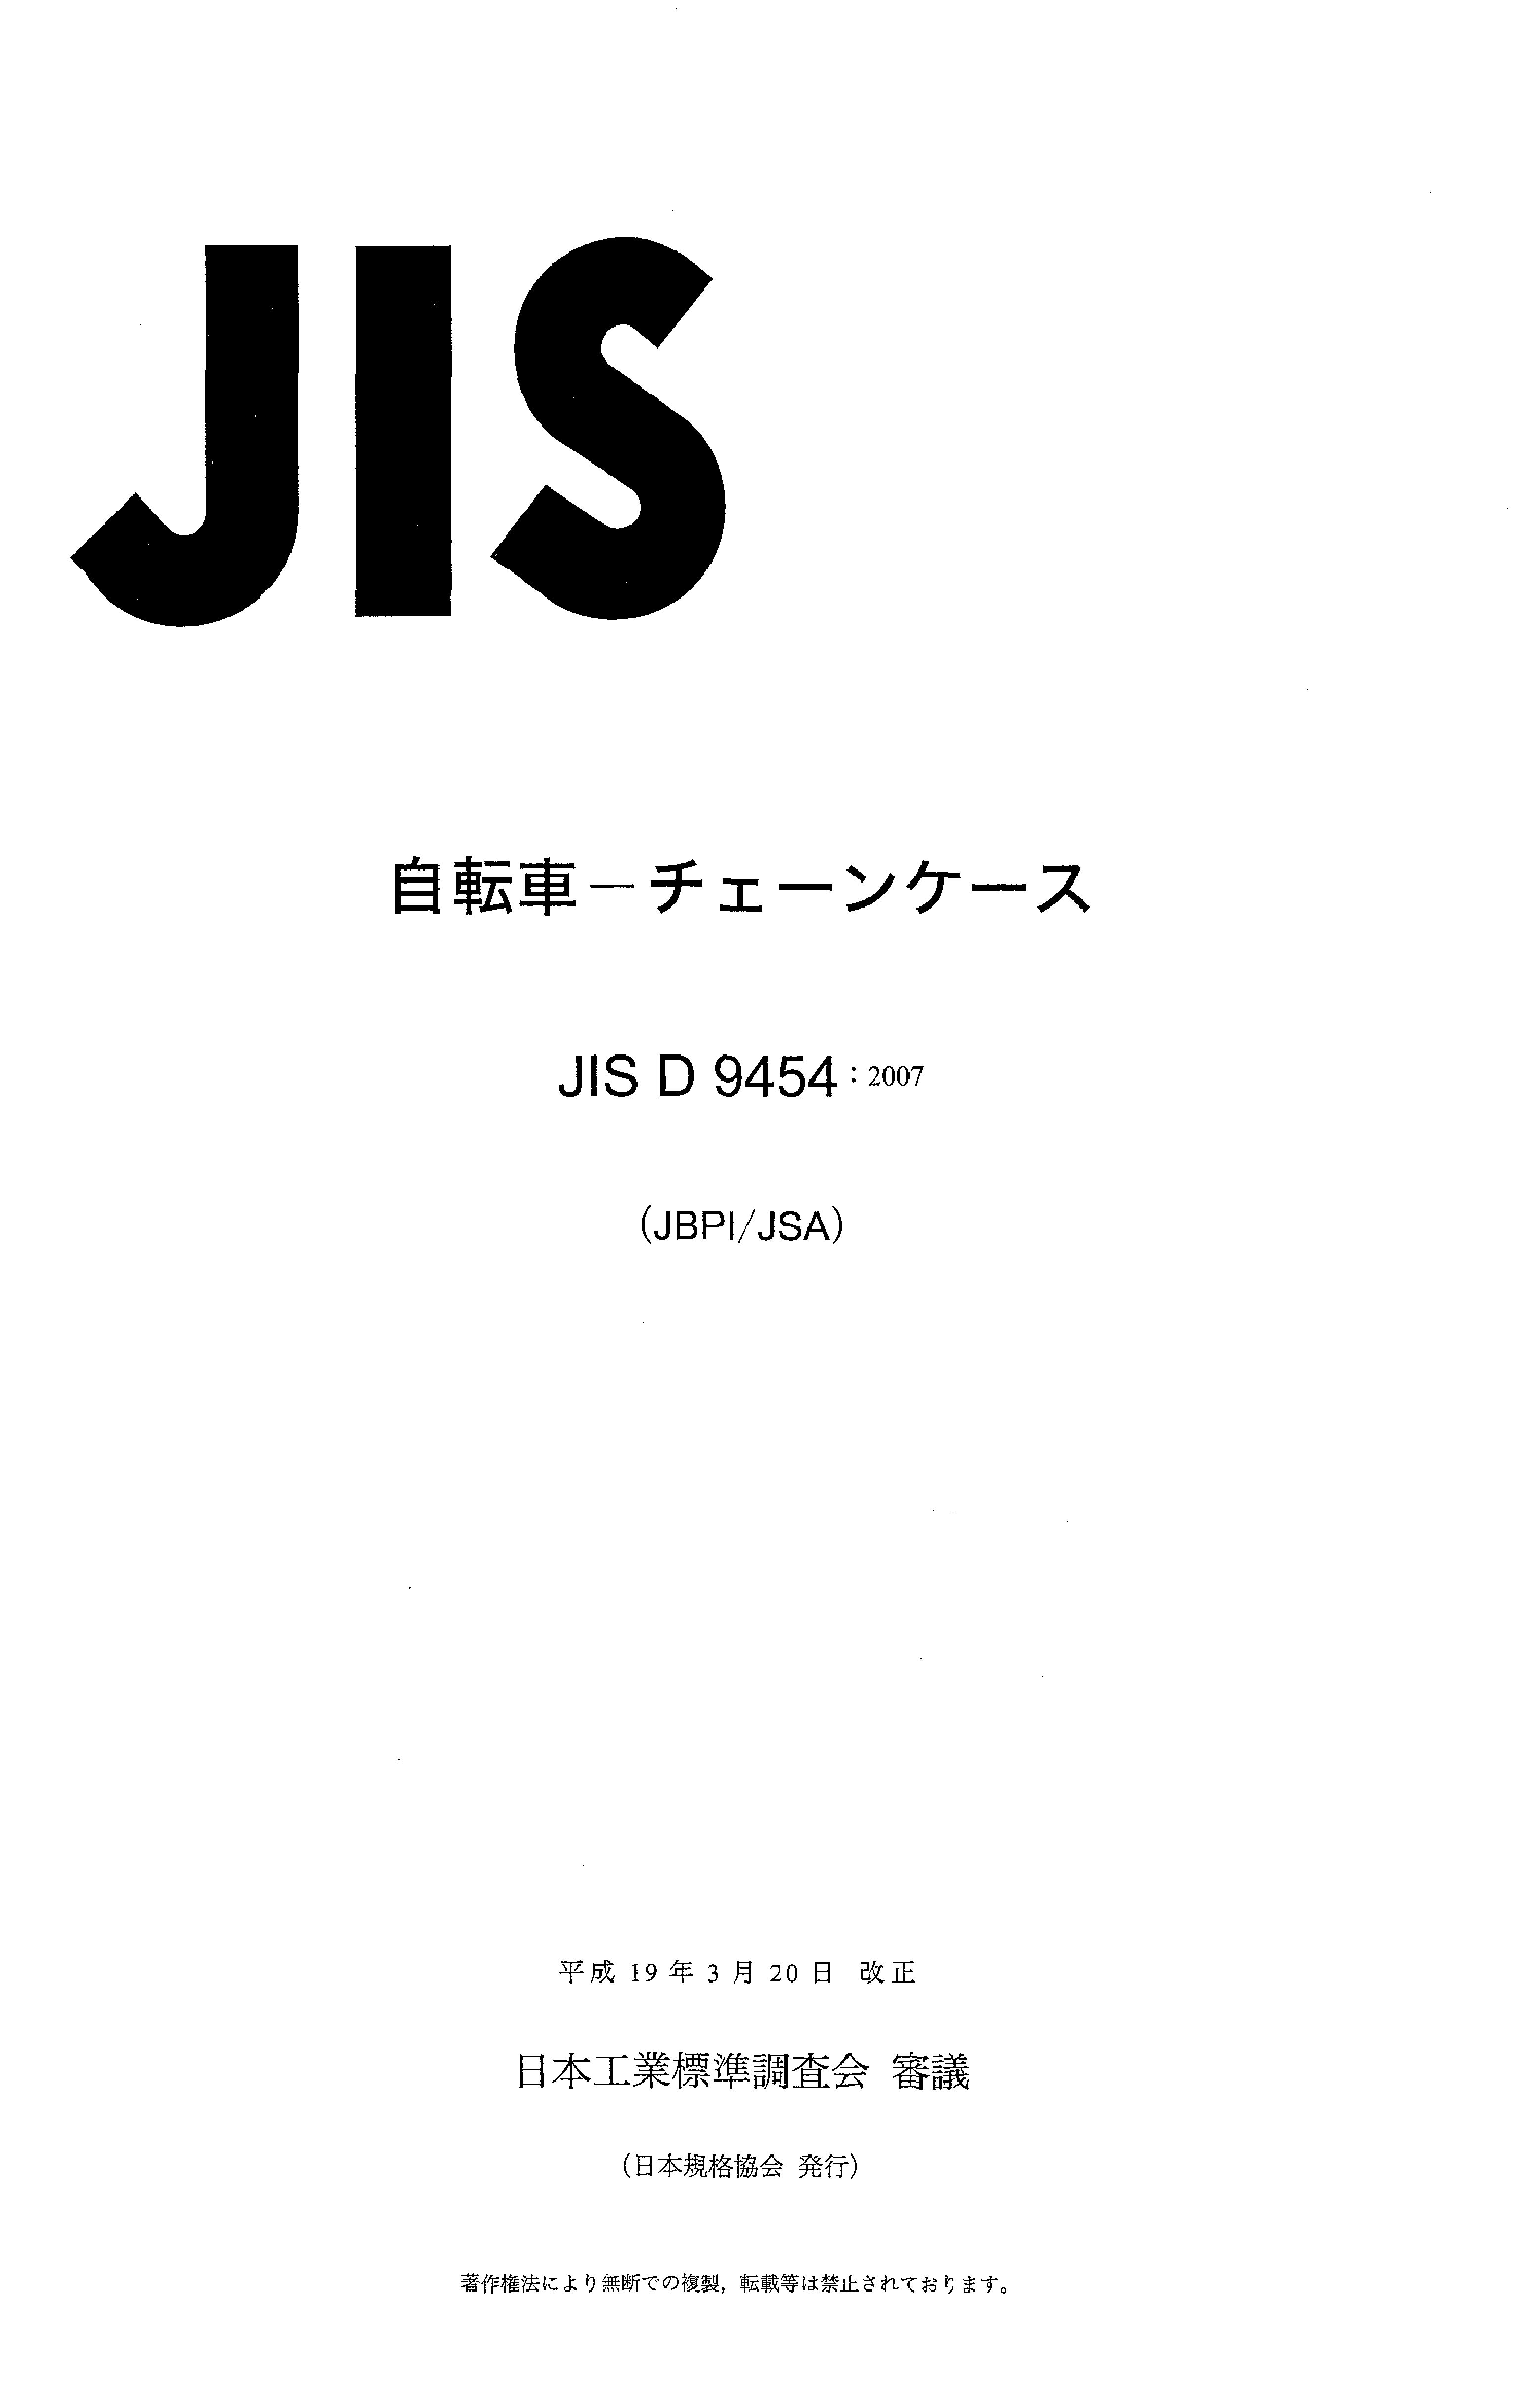 JIS D 9454:2007封面图